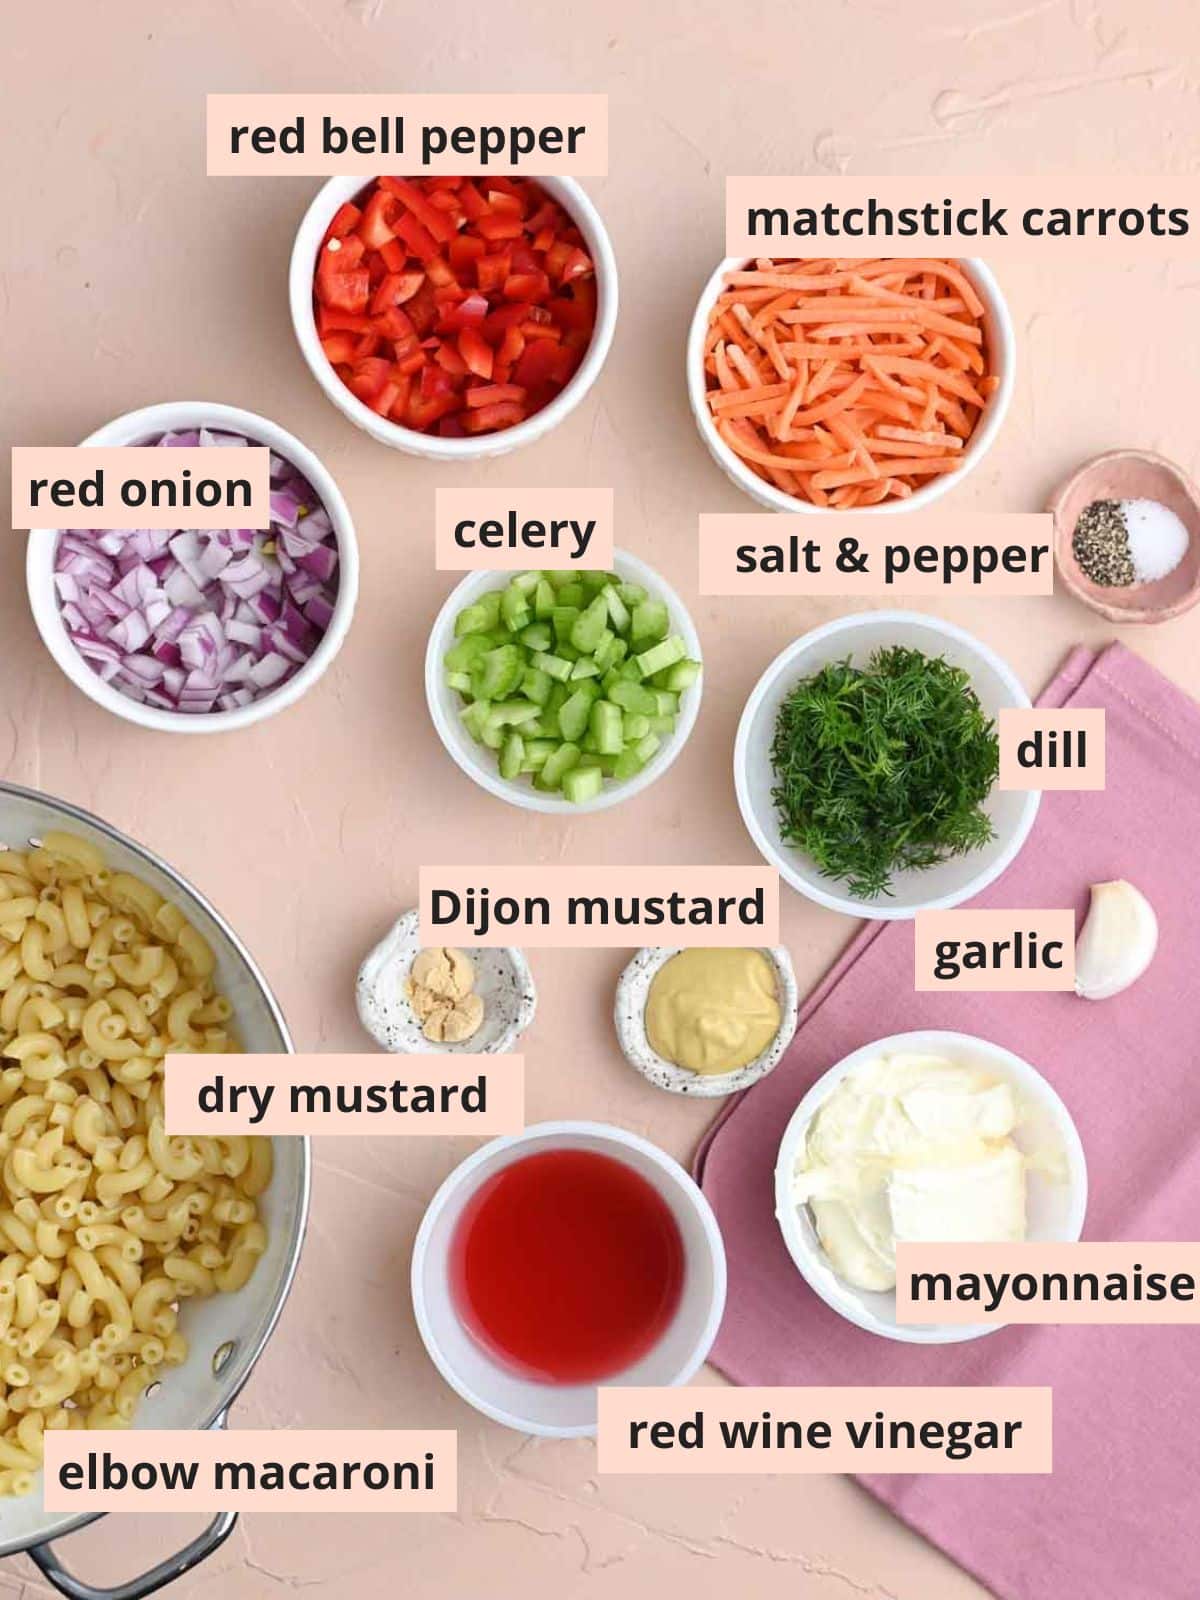 Labeled ingredients used to make macaroni salad.